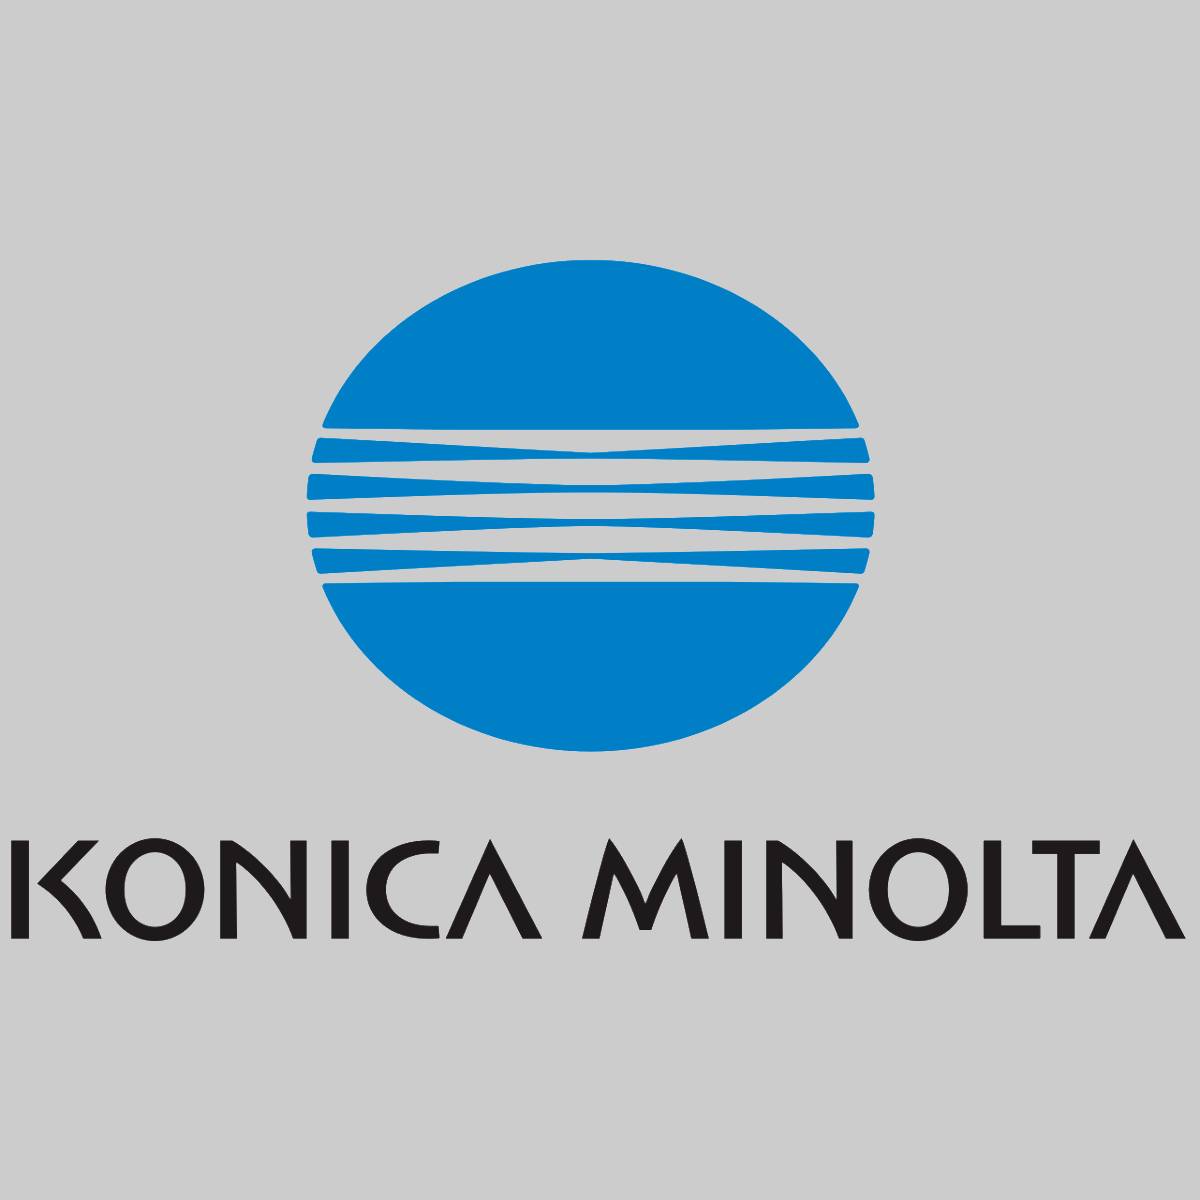 "Original Konica Minolta DRUM CARTRIDGE 4519-361 für Konica Minolta 1630 NEU